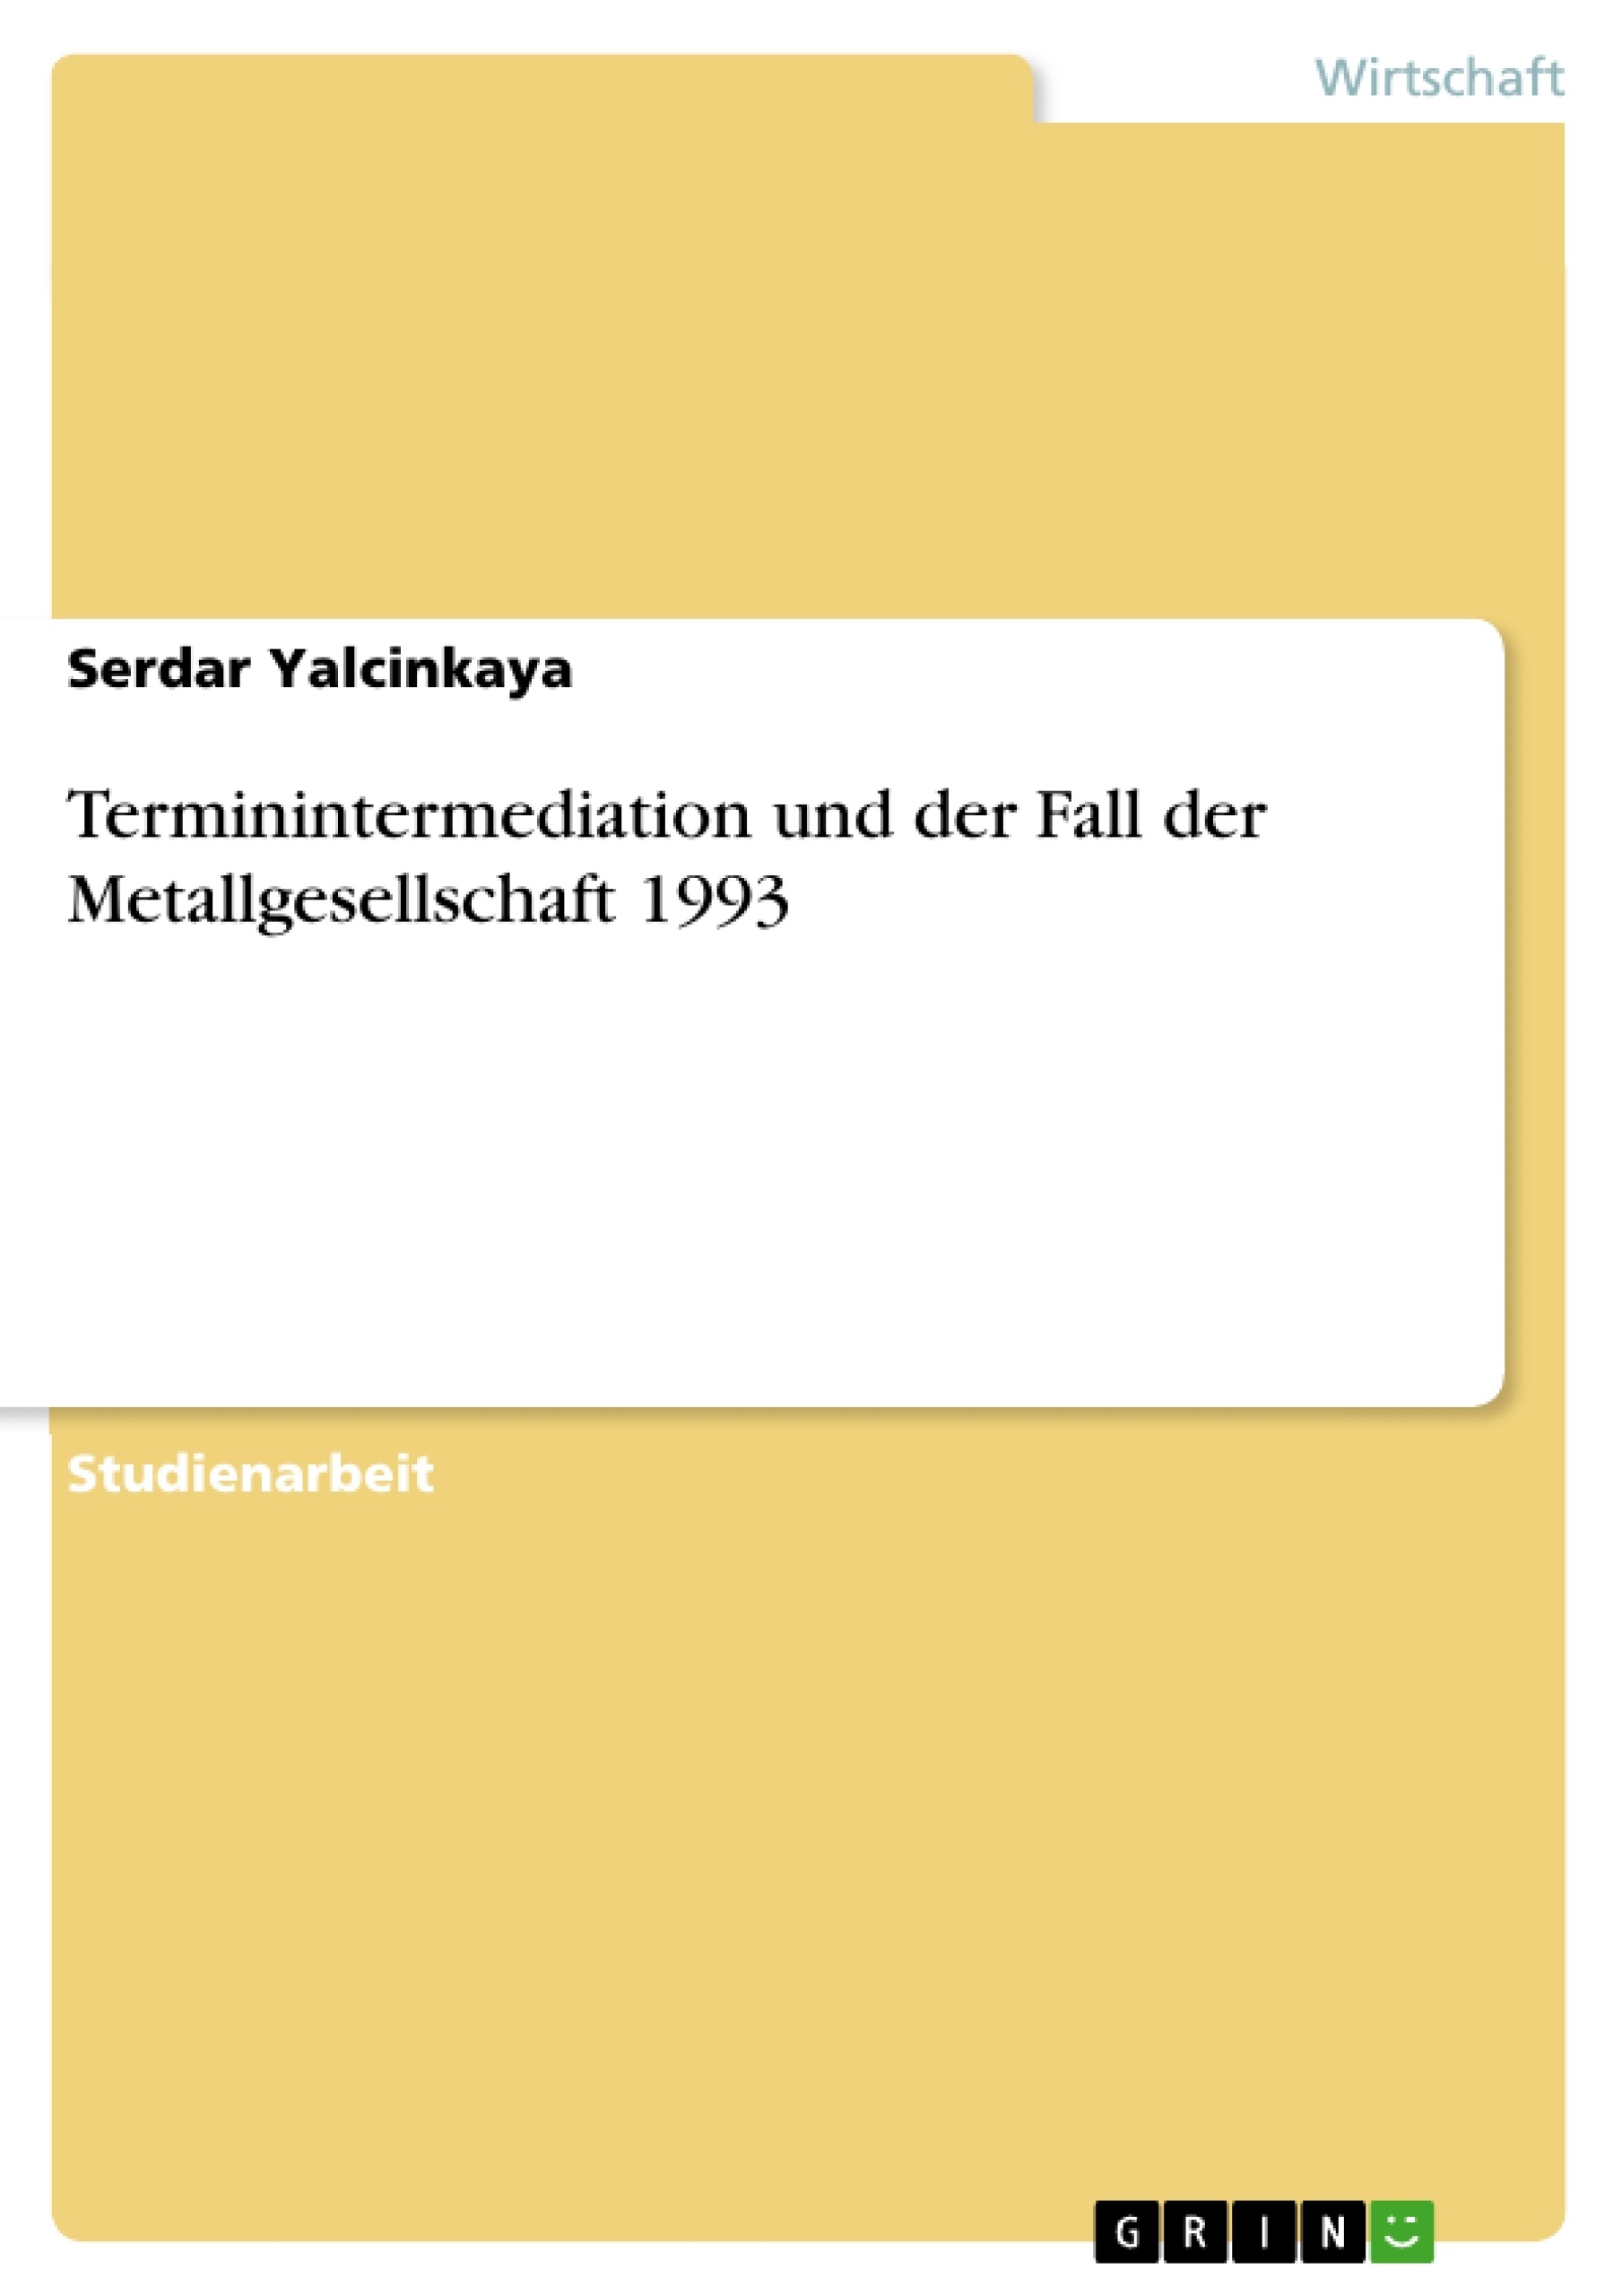 Title: Terminintermediation und der Fall der Metallgesellschaft 1993